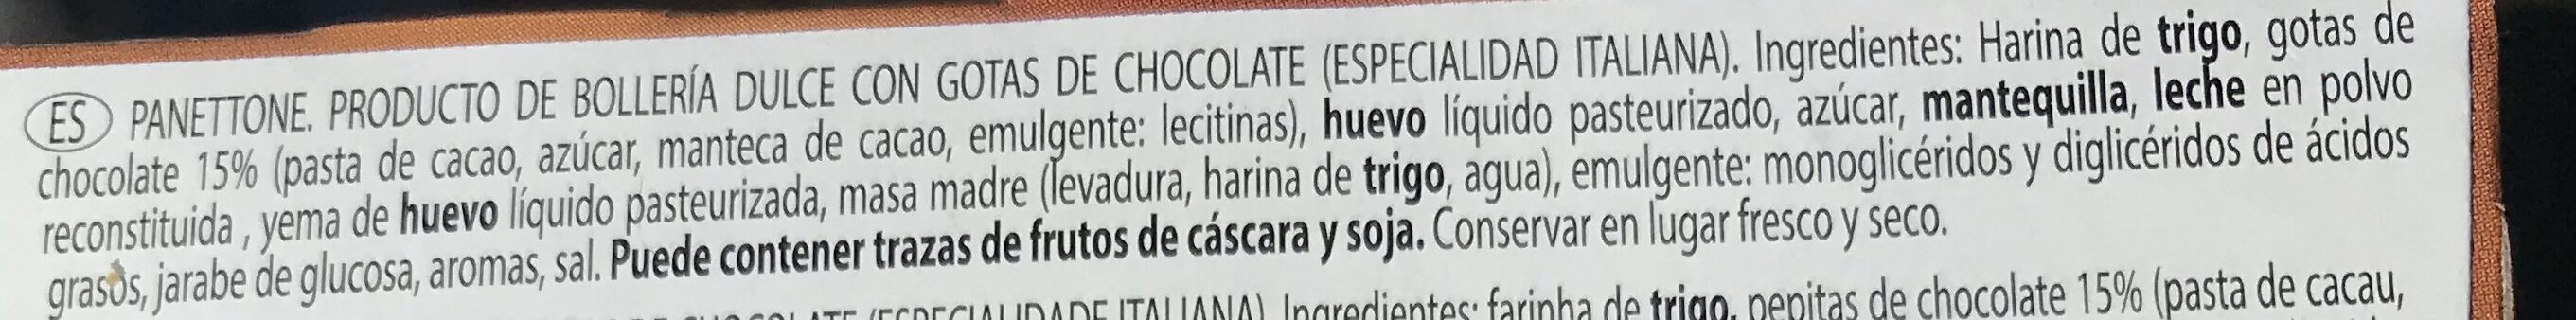 Mamma mamcini panettone gocce di cioccolato - Ingredientes